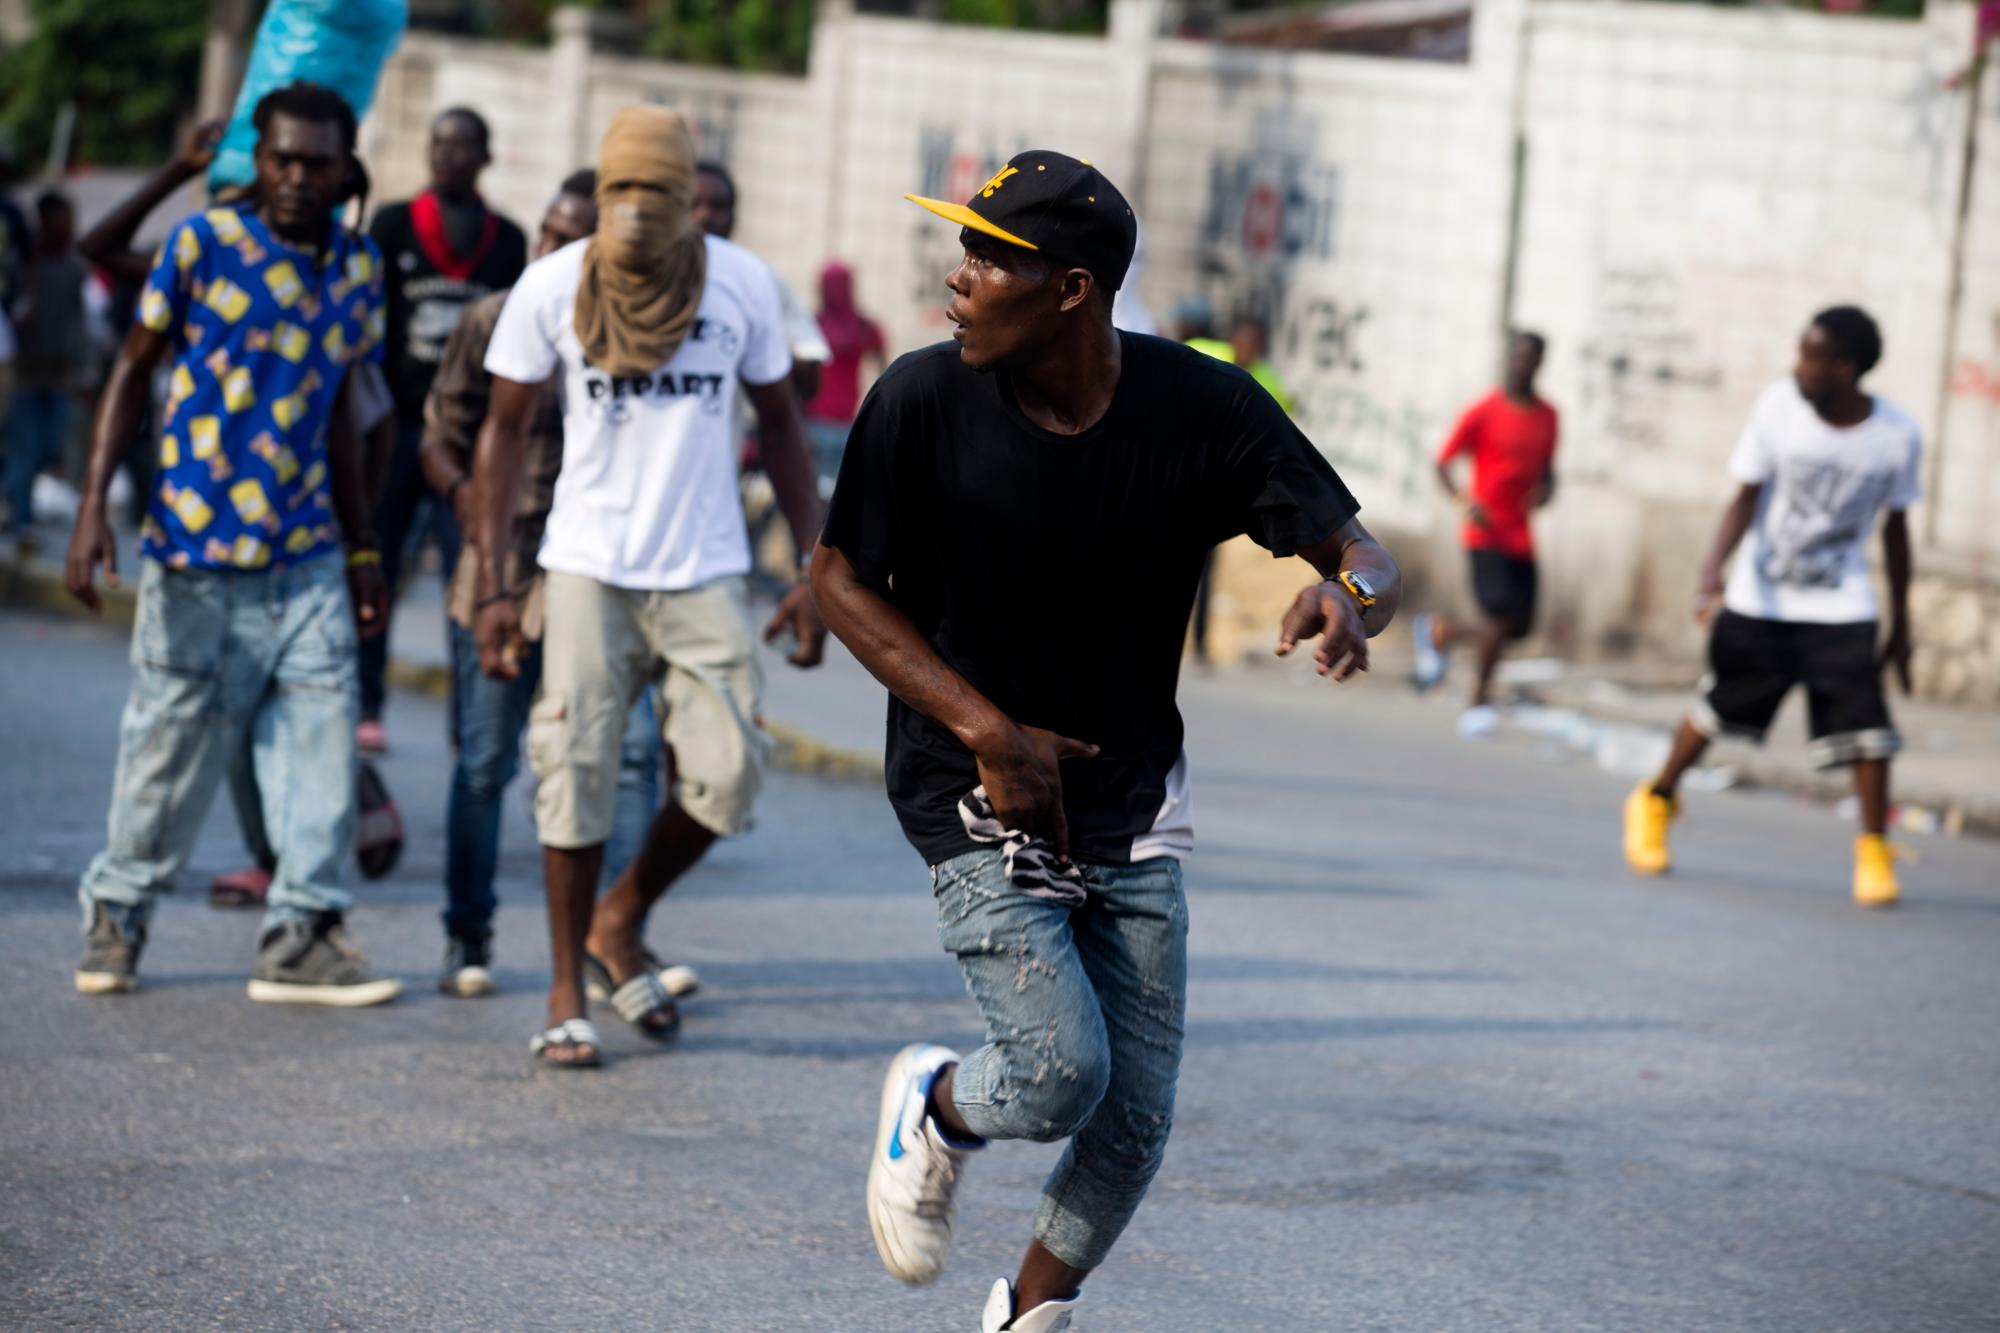 Un hombre busca un arma oculta durante una protesta para exigir la renuncia del presidente de Haití, Jovenel Moise, en el 216 aniversario de la Batalla de Vertieres en Puerto Príncipe, Haití, el lunes 18 de noviembre de 2019. Al menos cuatro personas fueron baleadas. y herido durante una pequeña protesta en la capital de Haití después de un discurso del presidente asediado Moise. Un periodista local, un oficial de policía y dos manifestantes fueron trasladados rápidamente con heridas de bala aparentes.